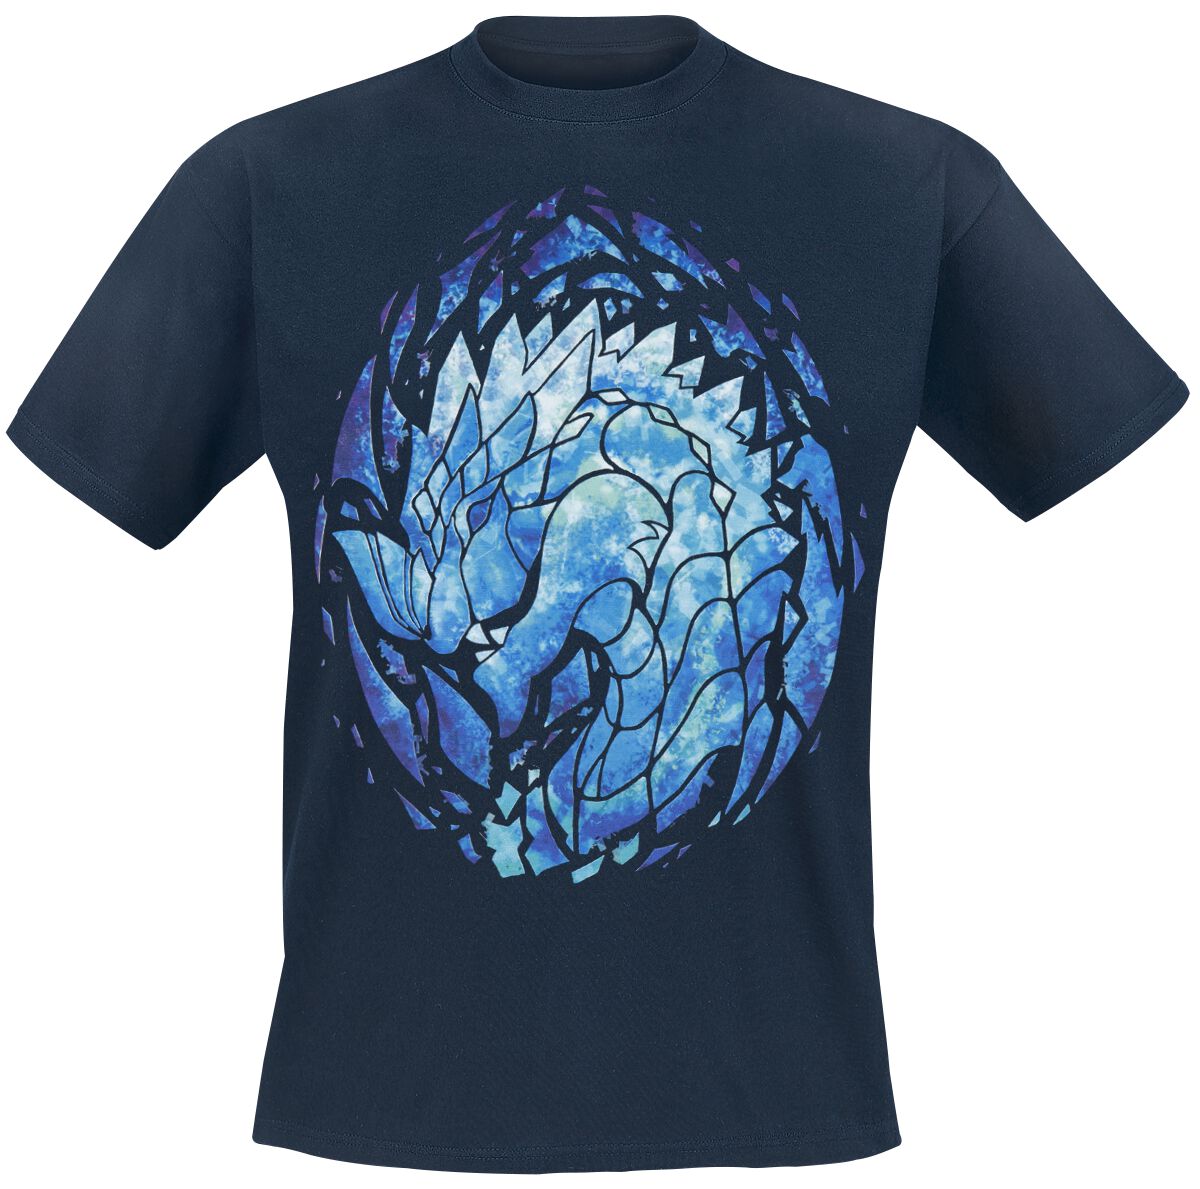 Guild Wars - Gaming T-Shirt - Her Name Is Aurene by Buttersphere - S bis M - für Männer - Größe S - dunkelblau  - EMP exklusives Merchandise!